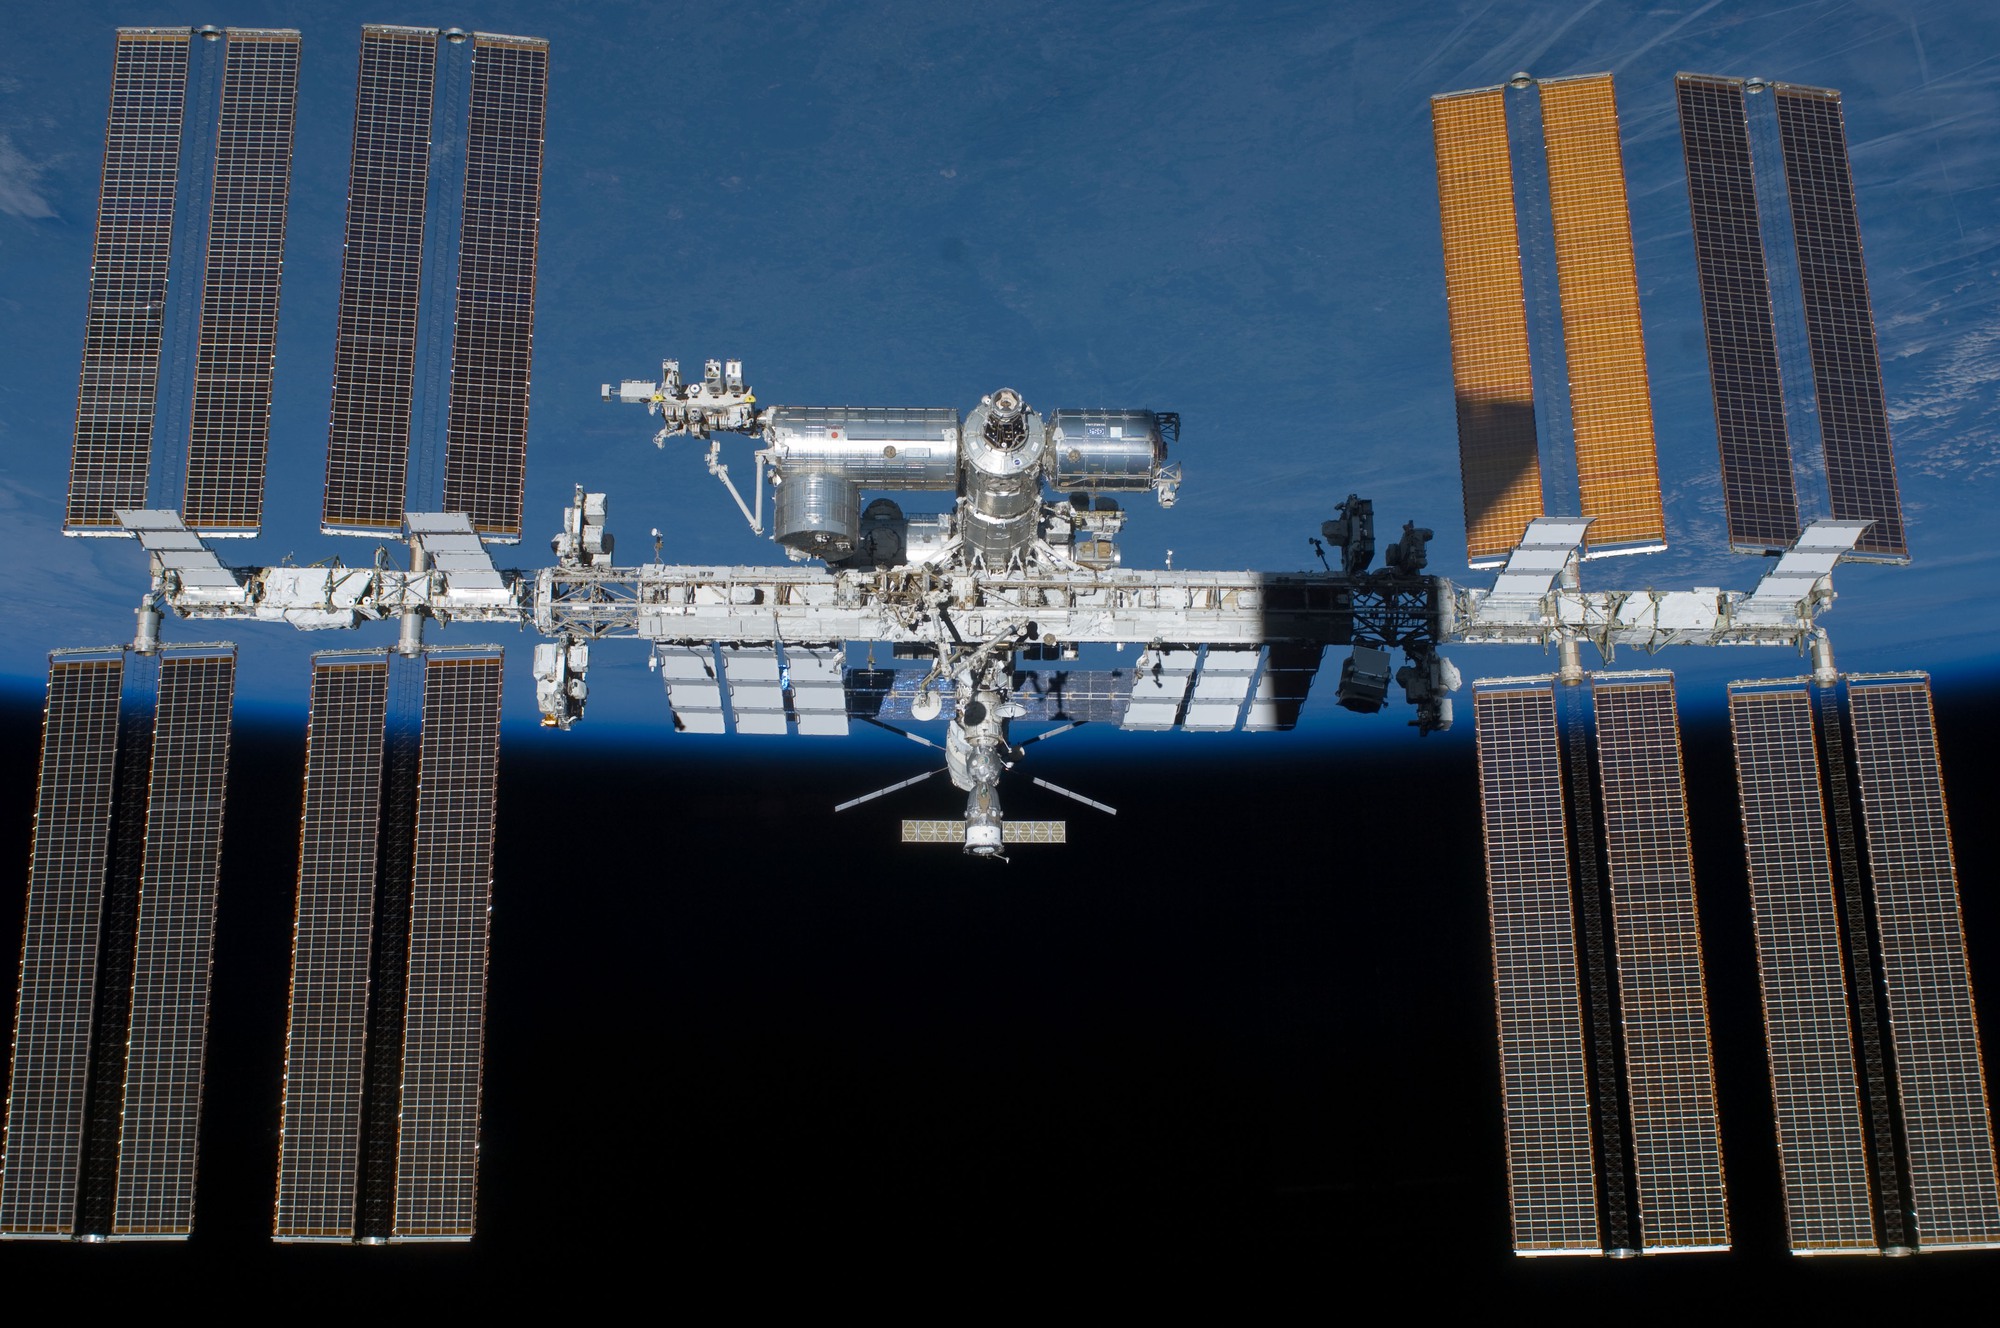 Hé lộ kế hoạch 'kéo' trạm vũ trụ quốc tế ISS về Trái Đất để phá hủy của NASA - Ảnh 1.